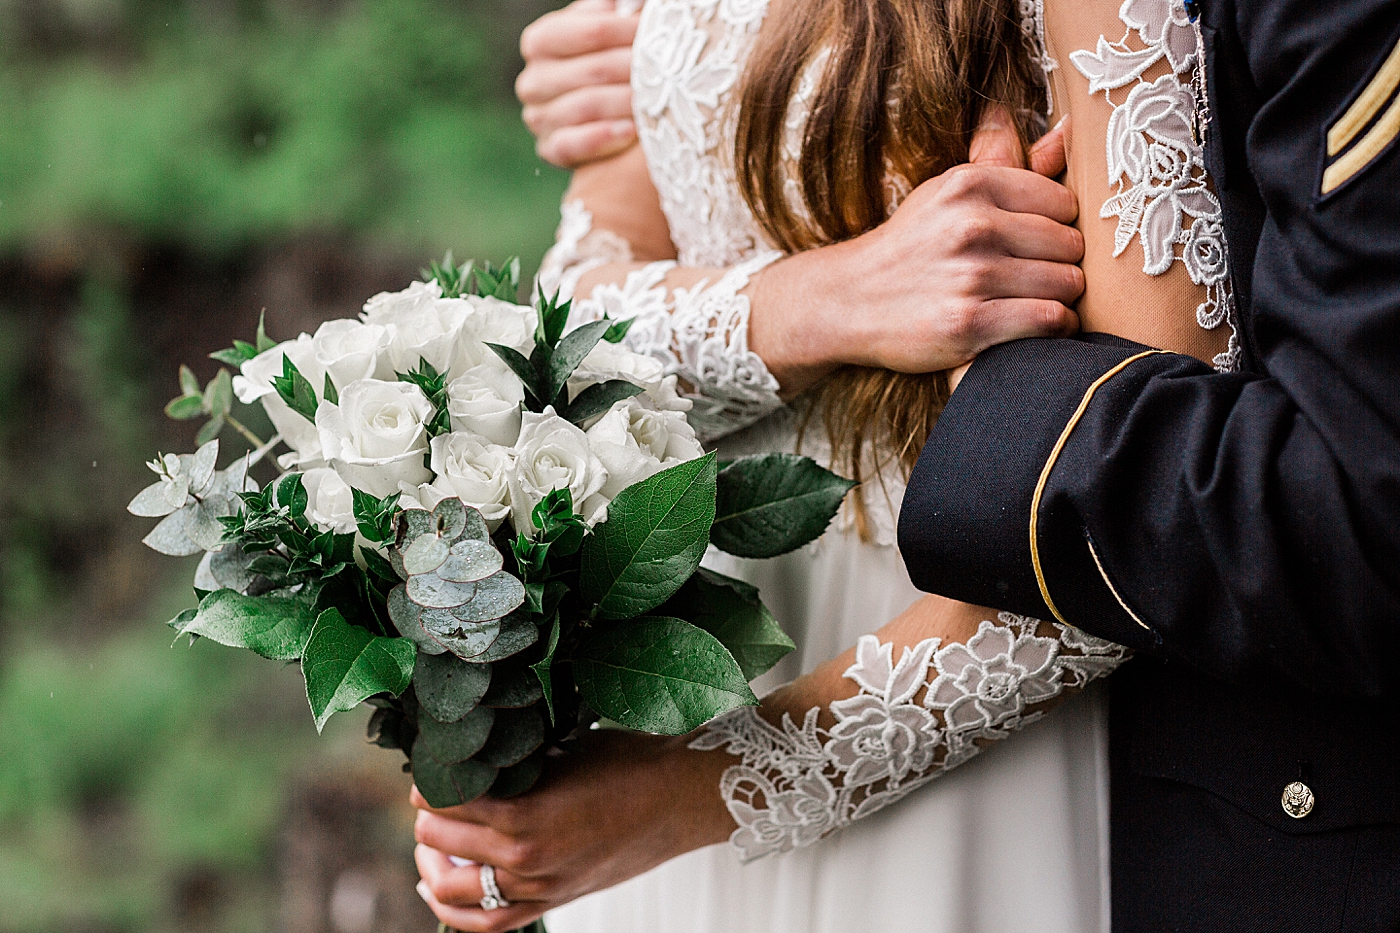 Bridal bouquet and dress details for elopement | Megan Montalvo Photography